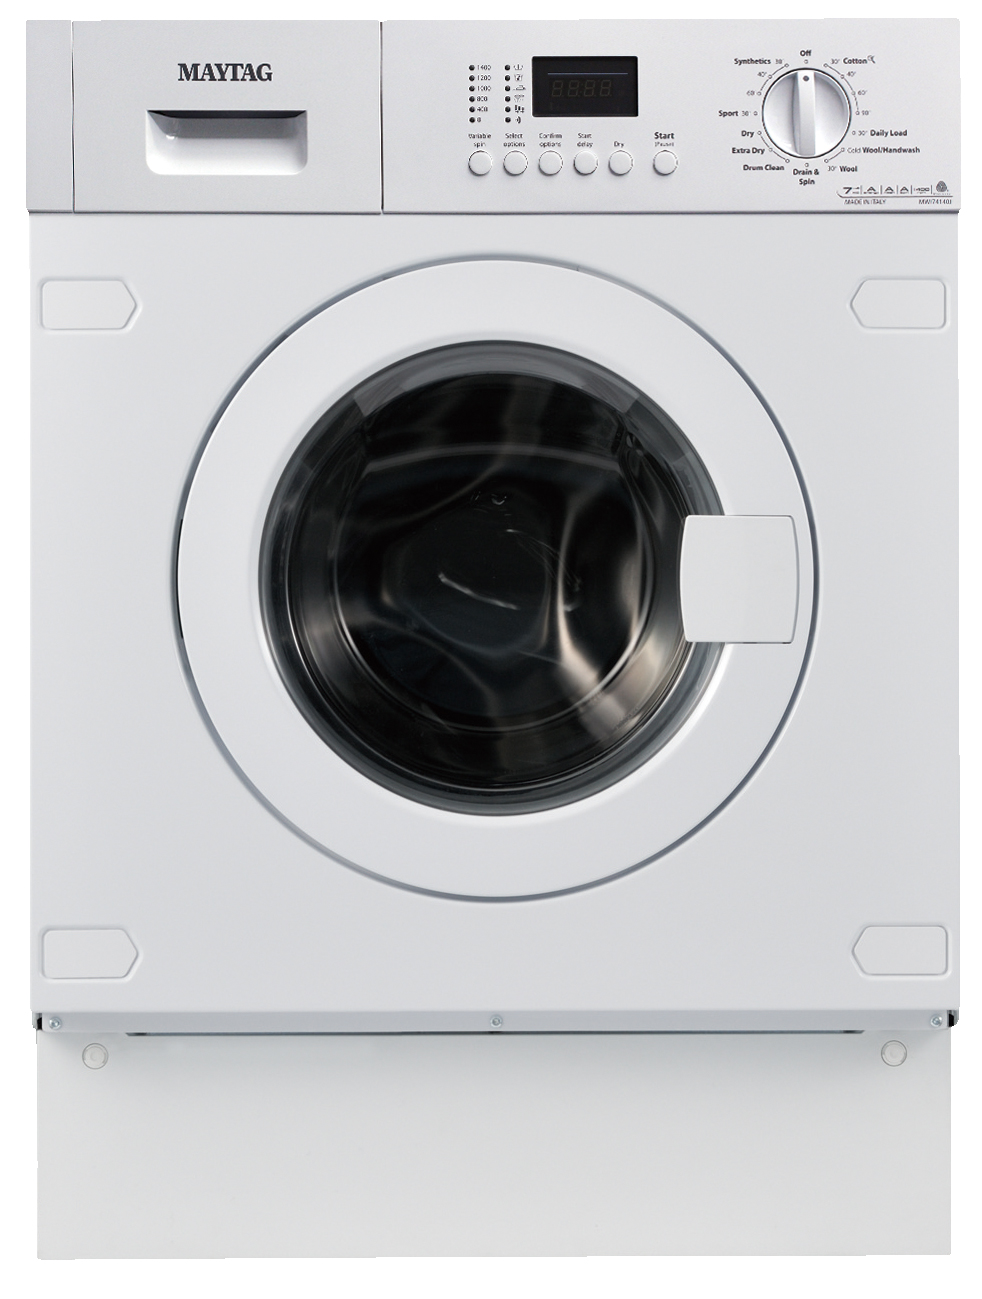 メイタッグ洗濯乾燥機MWI74140JA2販売終了と後継機種ワールプール洗濯 